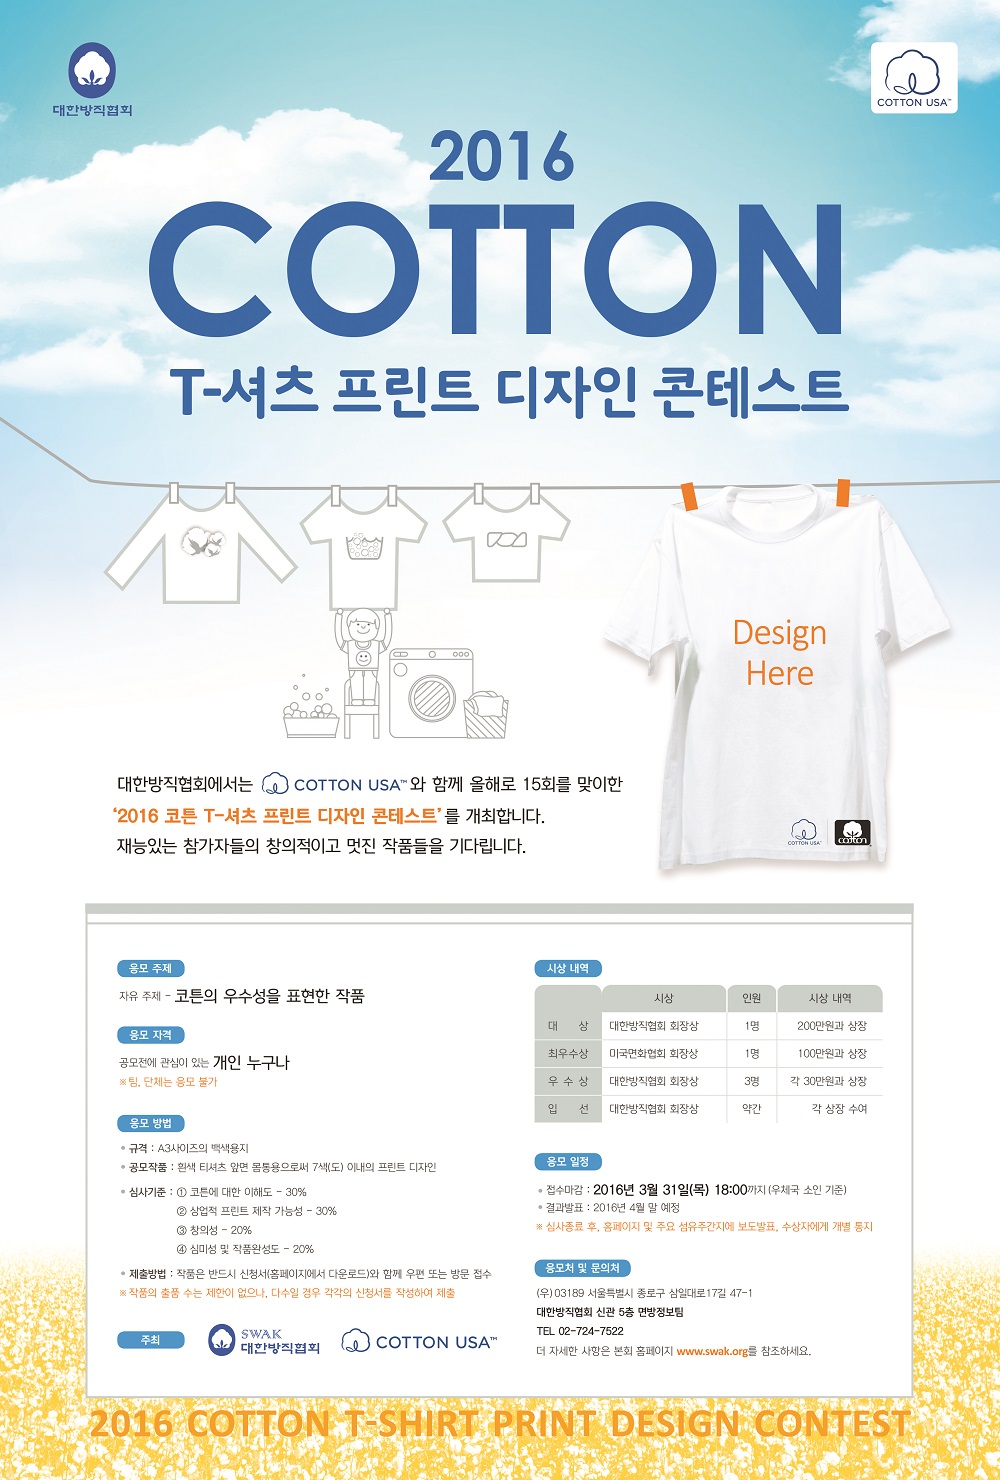 2016 코튼 T-셔츠 프린트 디자인 콘테스트 시행 | 1